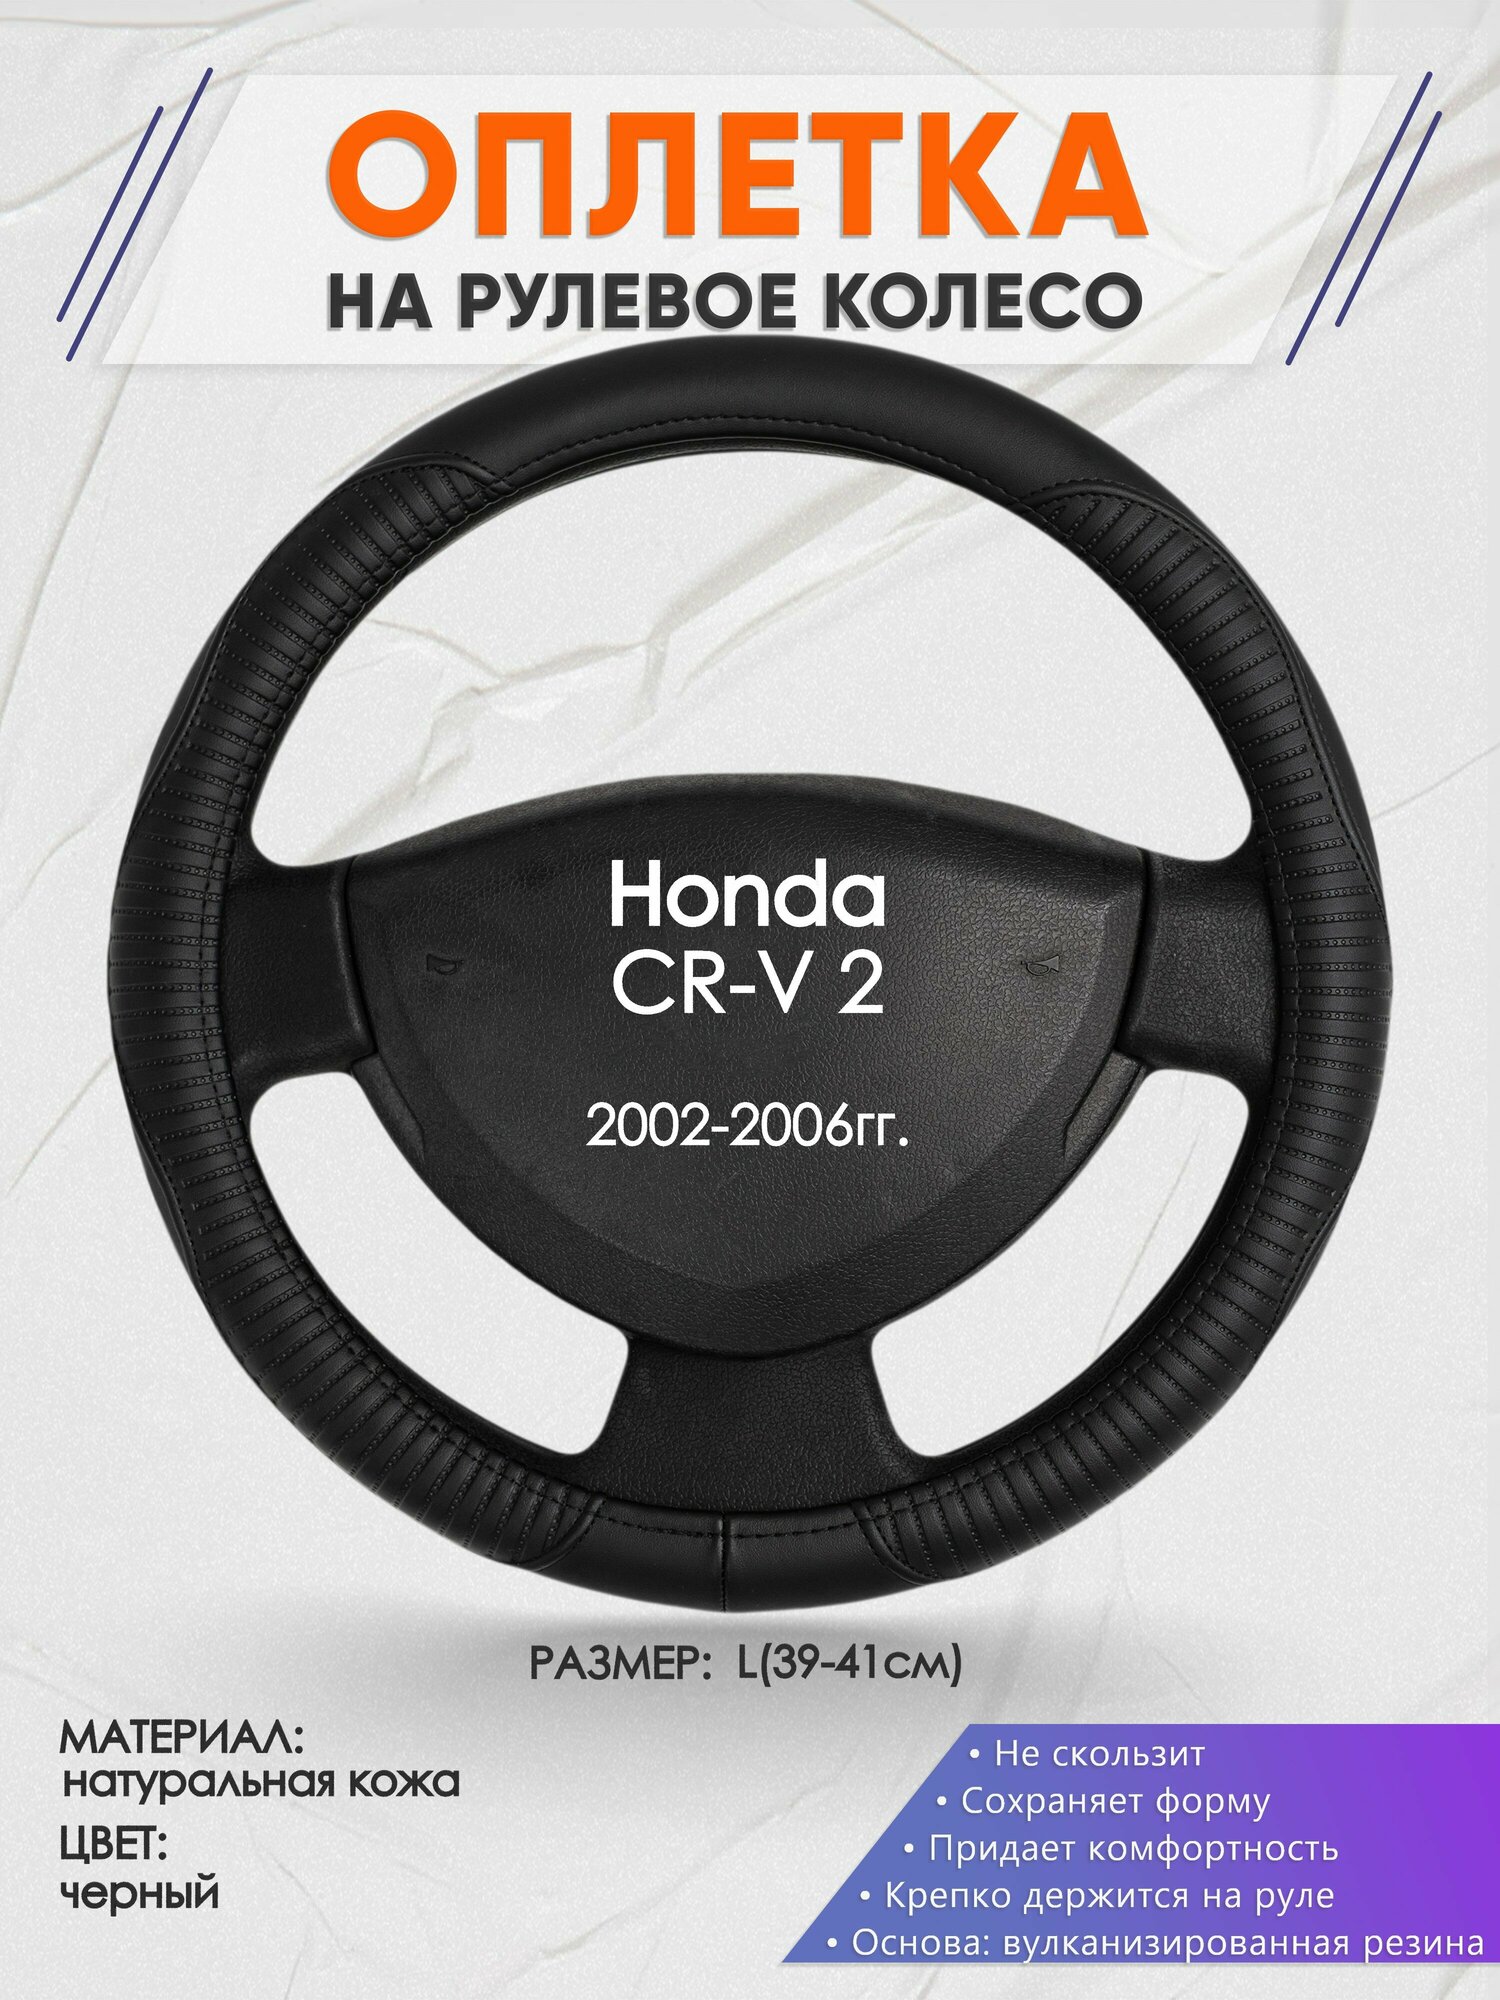 Оплетка на руль для Honda CR-V 2(Хонда срв 2) 2002-2006, L(39-41см), Натуральная кожа 22